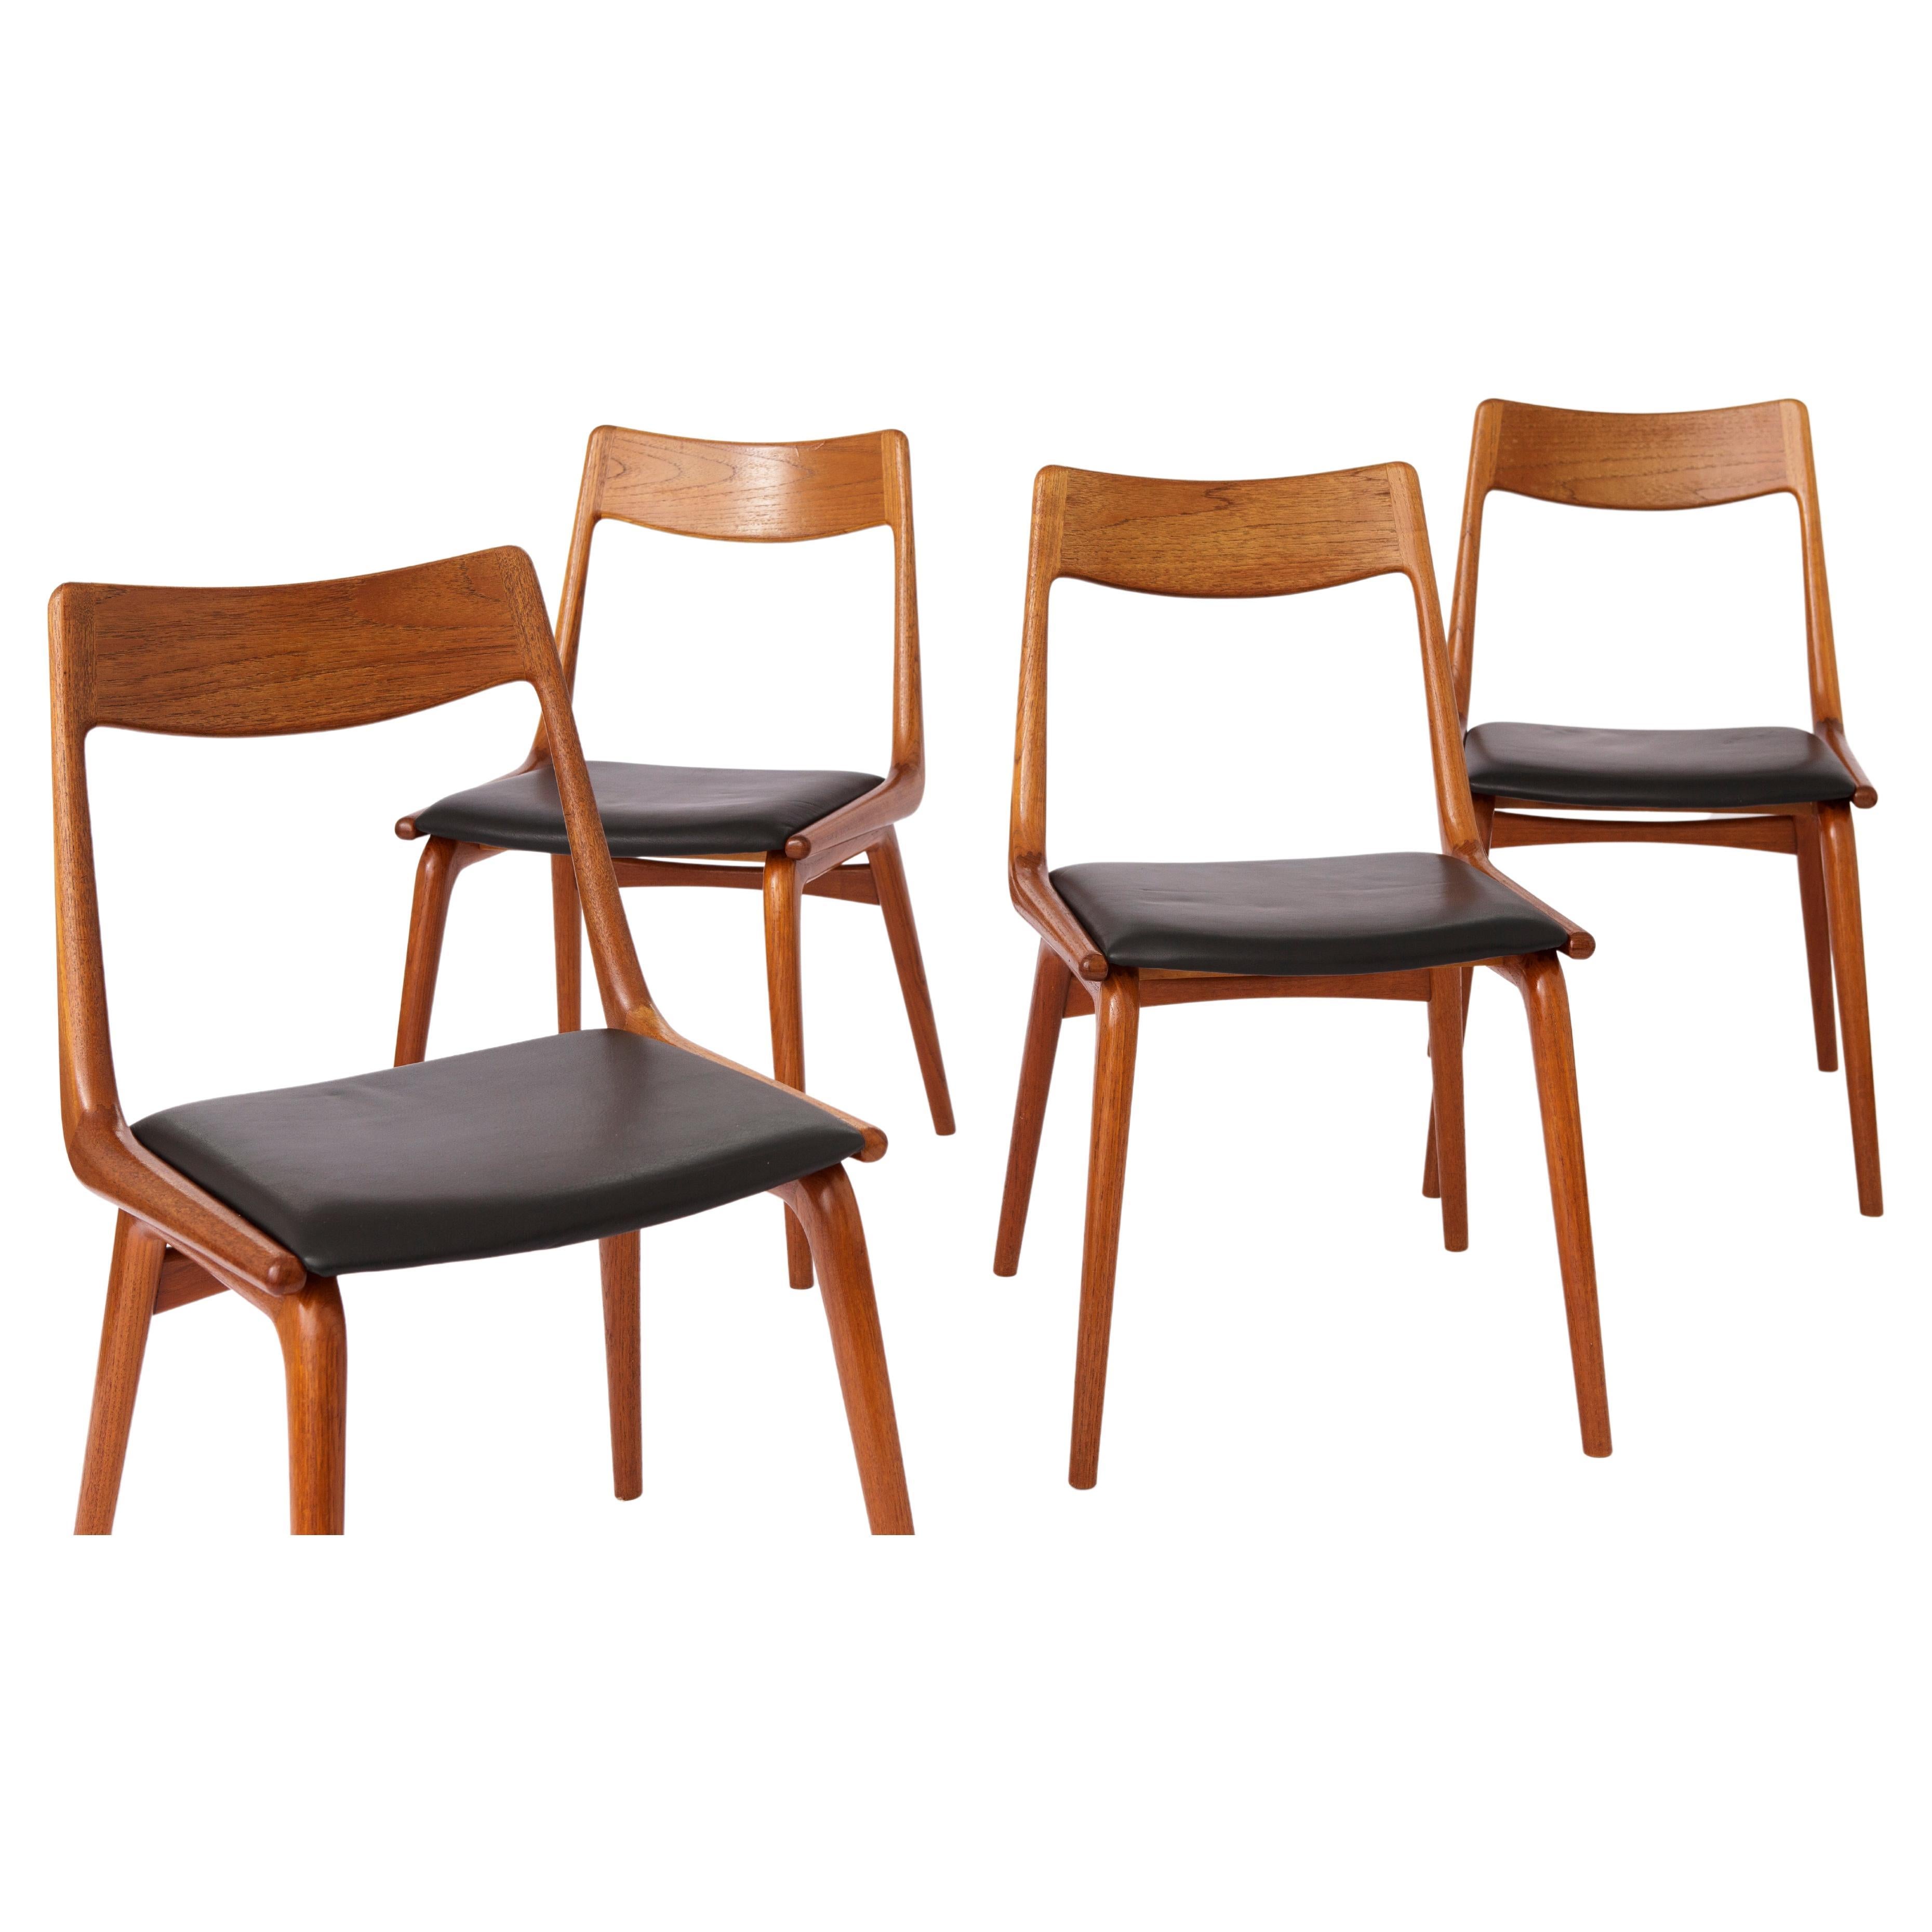 Teak Boomerang Dining Chairs by Alfred Christensen for Slagelse Møbelværk, 1950s